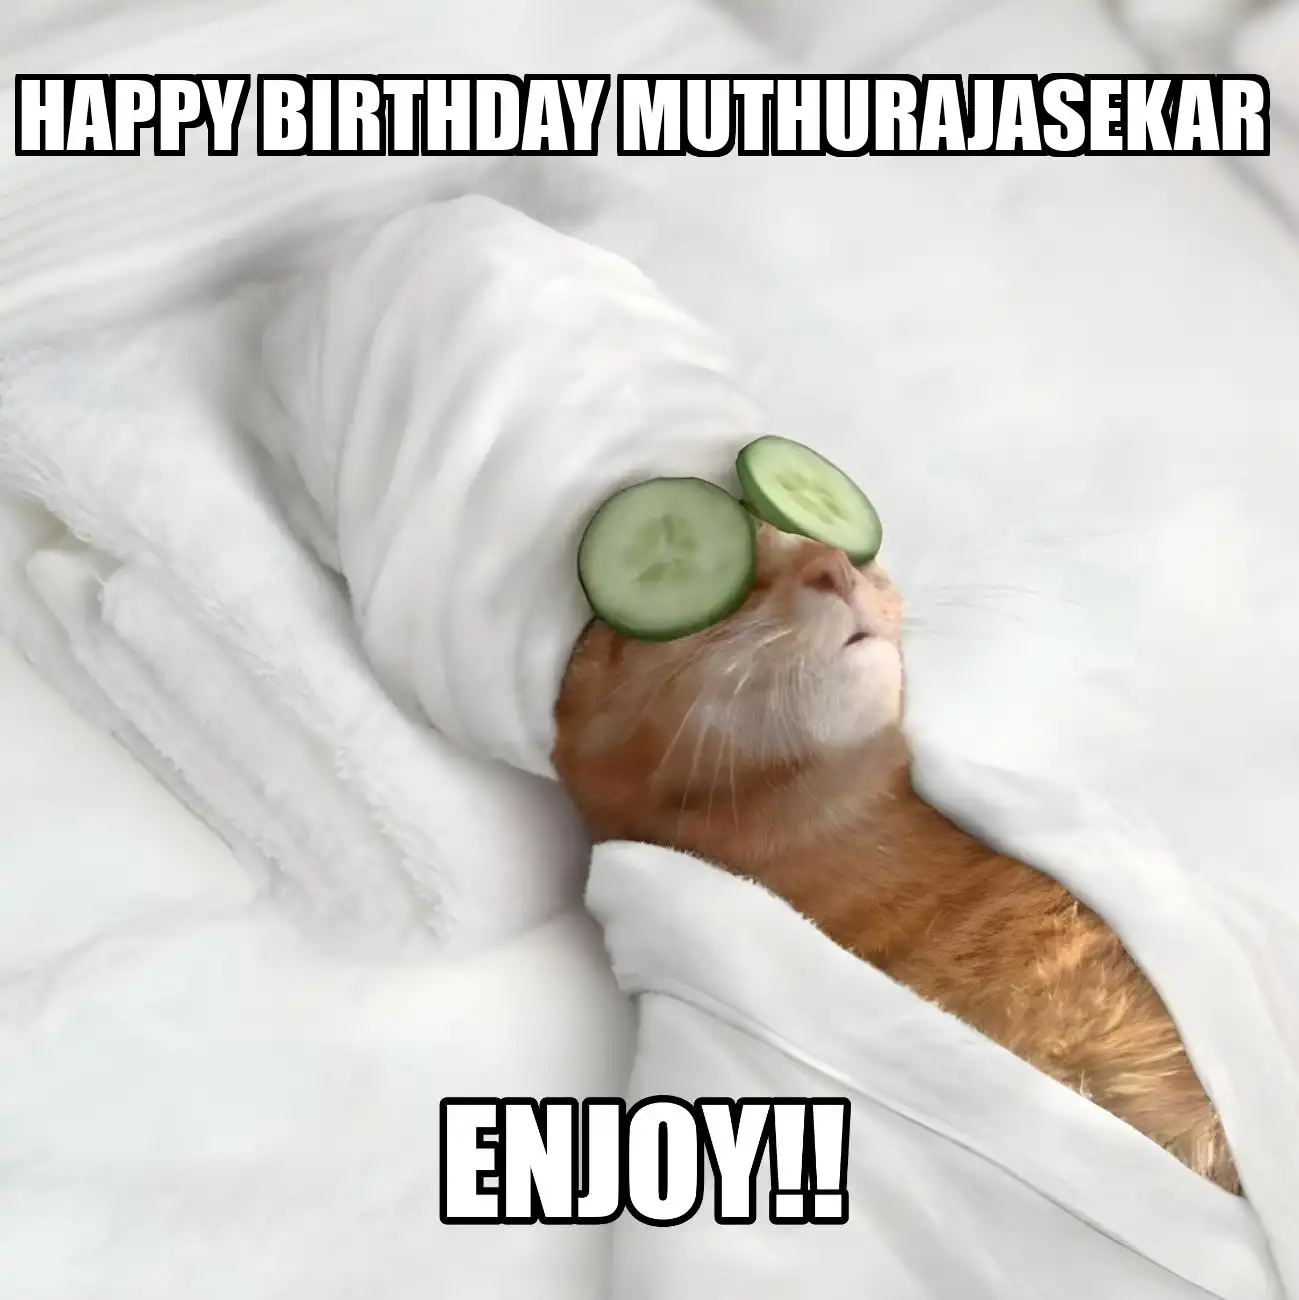 Happy Birthday Muthurajasekar Enjoy Cat Meme